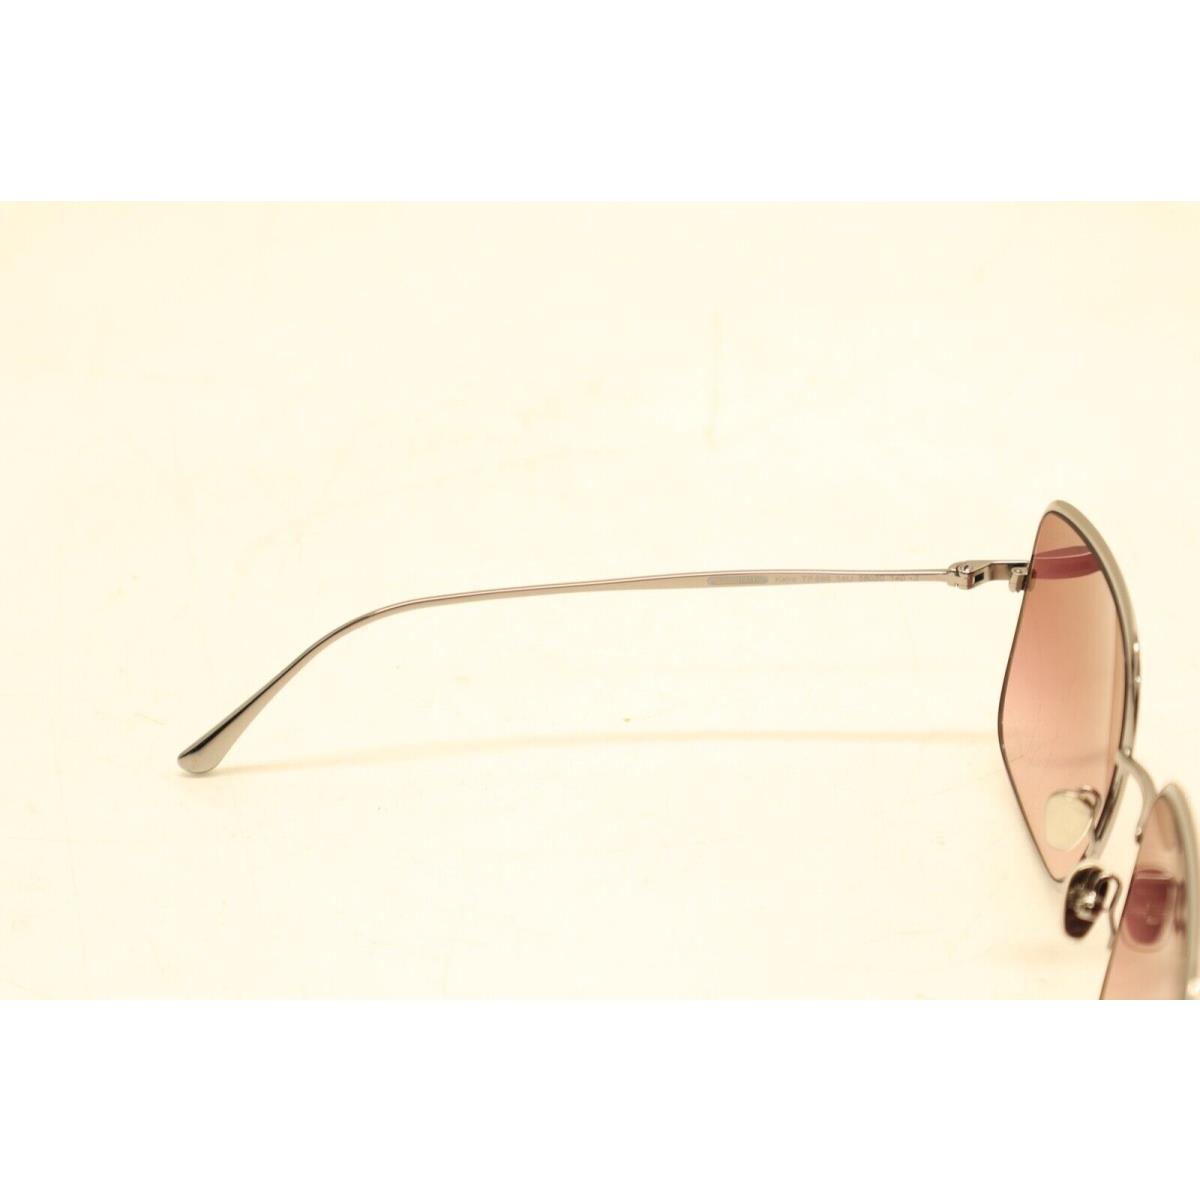 Tom Ford sunglasses  - Gray Frame, Purple Lens